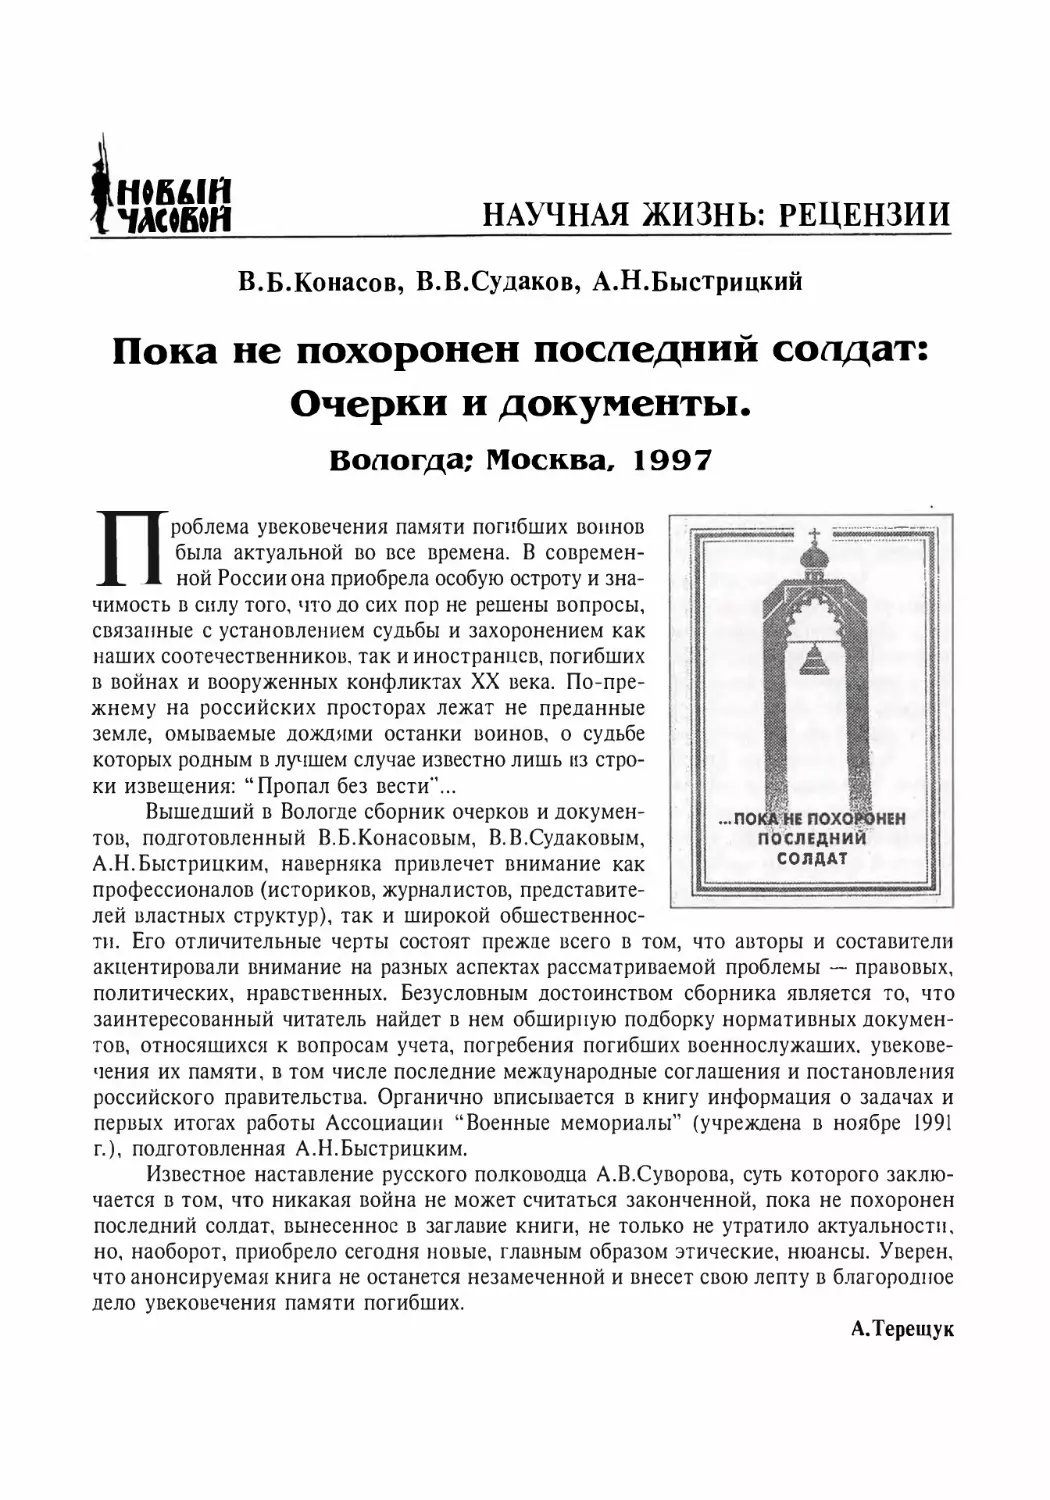 Рецензии
В.Б. Конасов, В.В. Судаков, А.Н. Быстрицкий. Пока не похоронен последний солдат